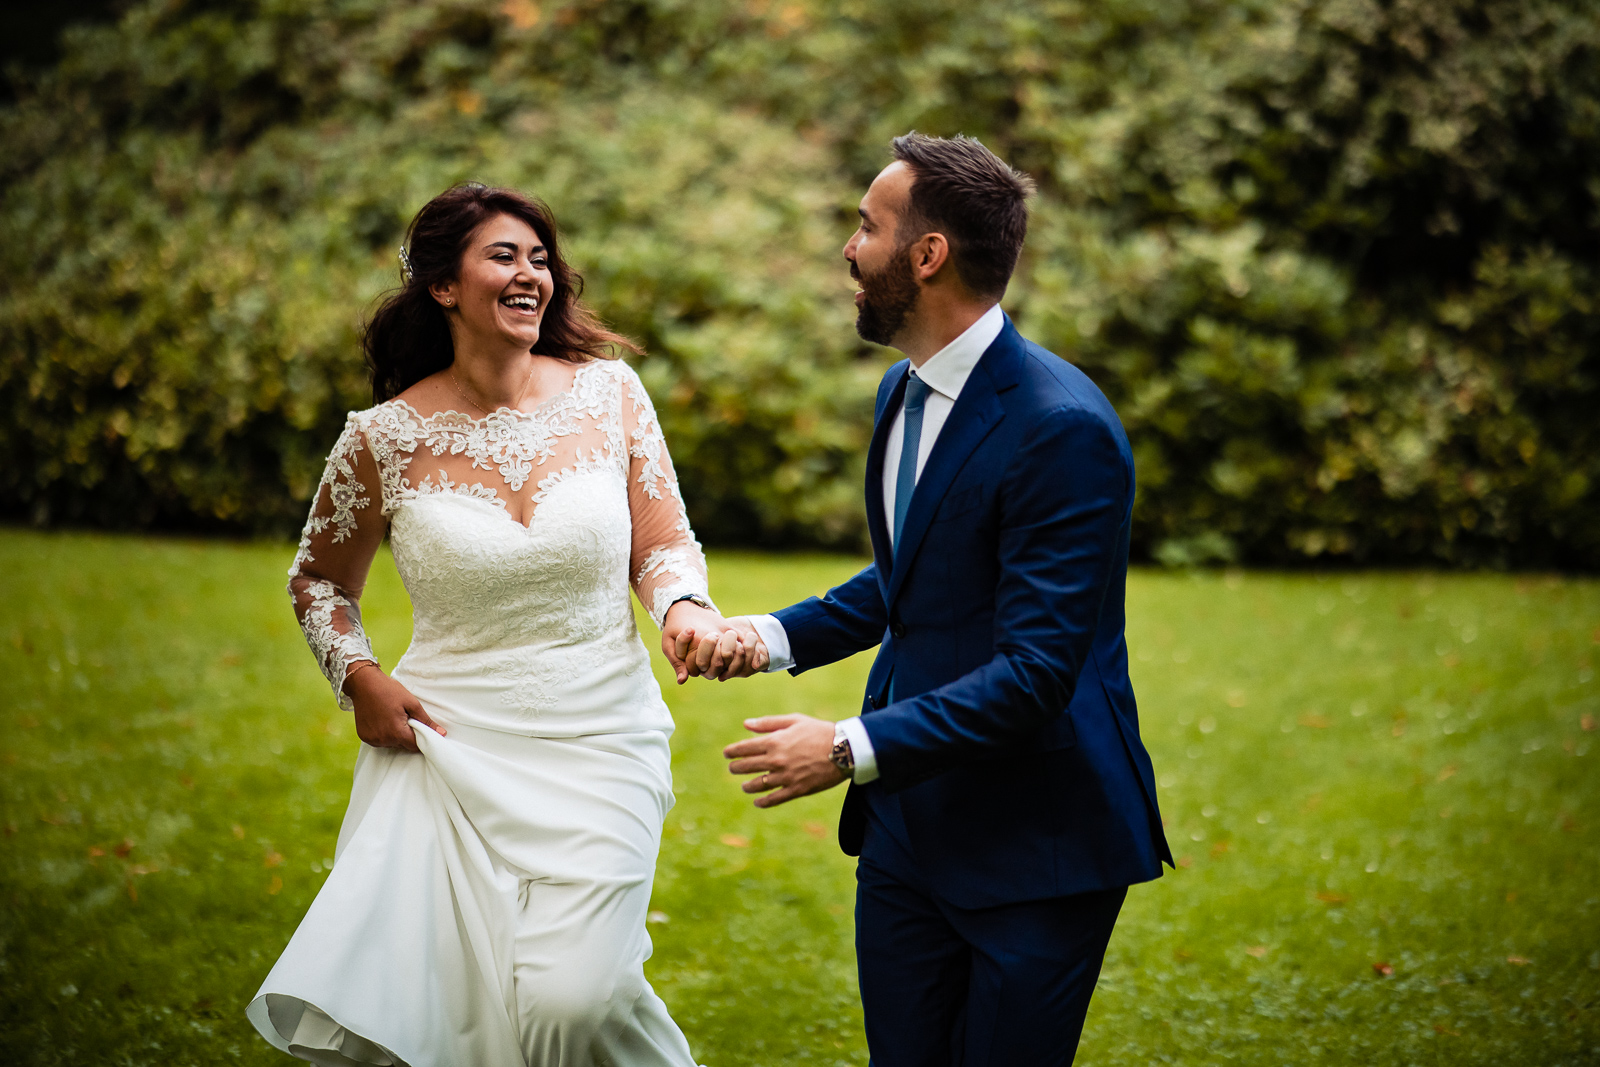 Trouwfotograaf herfst fotoshoot Wassenaar met bruidspaar